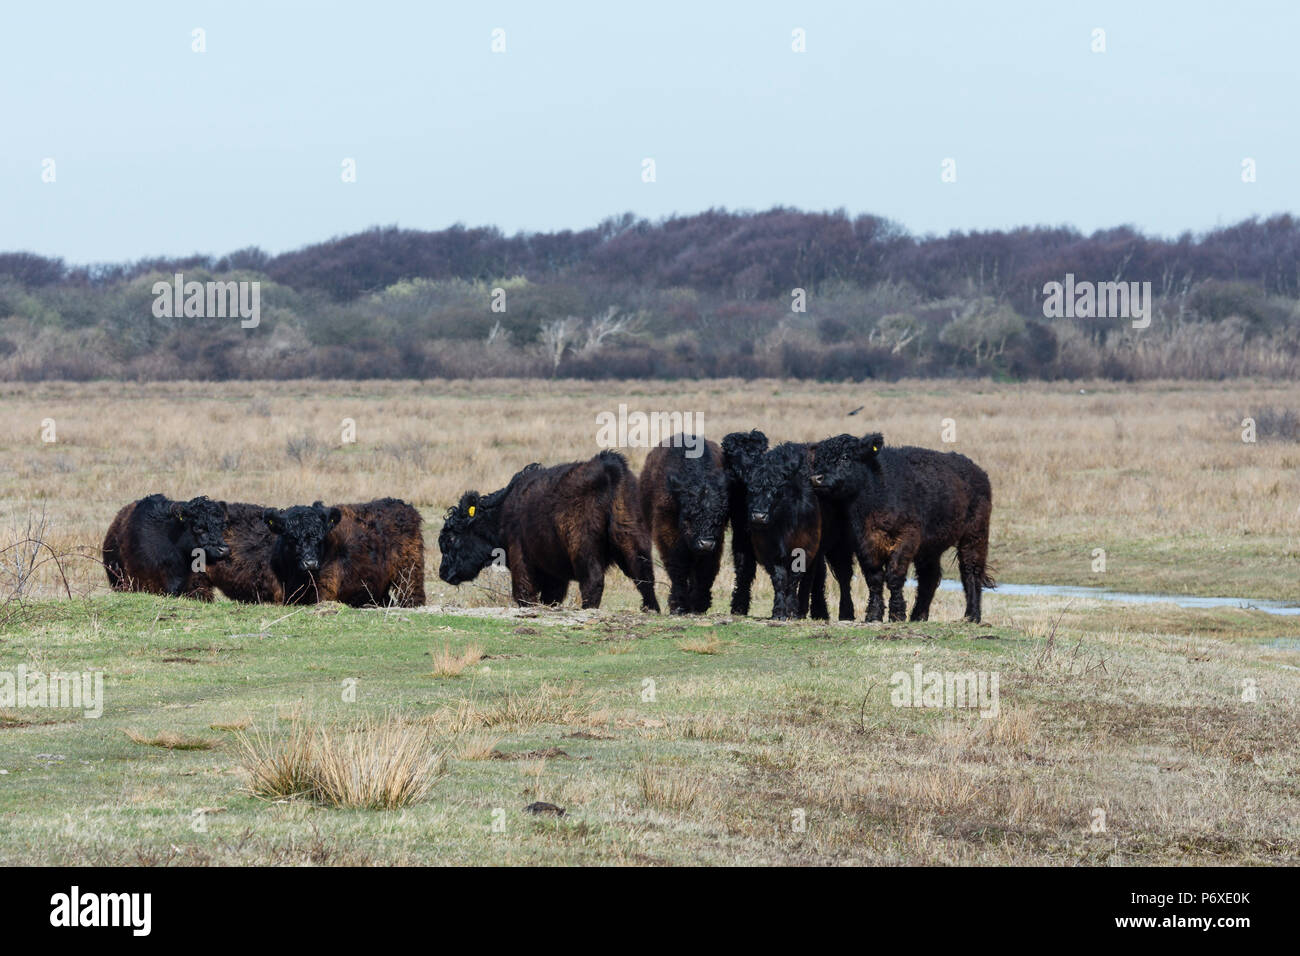 Galloway cattle, nature reserve De Muy, Den Hoorn, Nationalpark Duinen van Texel, schottisches Hochlandrind, Galloway, Texel, Netherlands Stock Photo